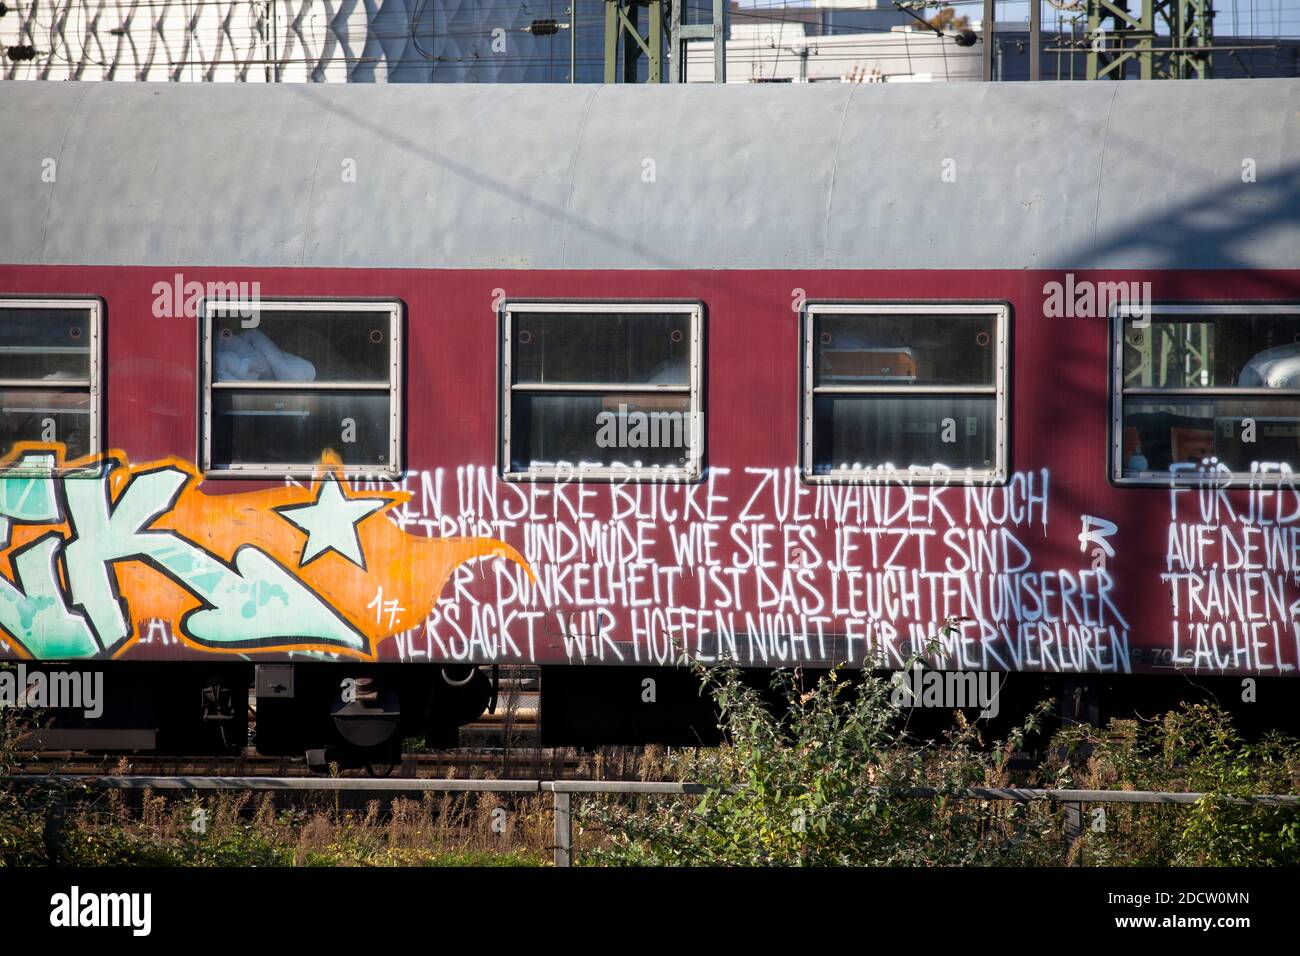 Ama i graffiti di poesia su un treno parcheggiato a Deutz, Colonia, Germania. Liebespoesie Graffitis auf einem abgestellten Zug im Stadtteil Deutz, Koeln, Deuts Foto Stock